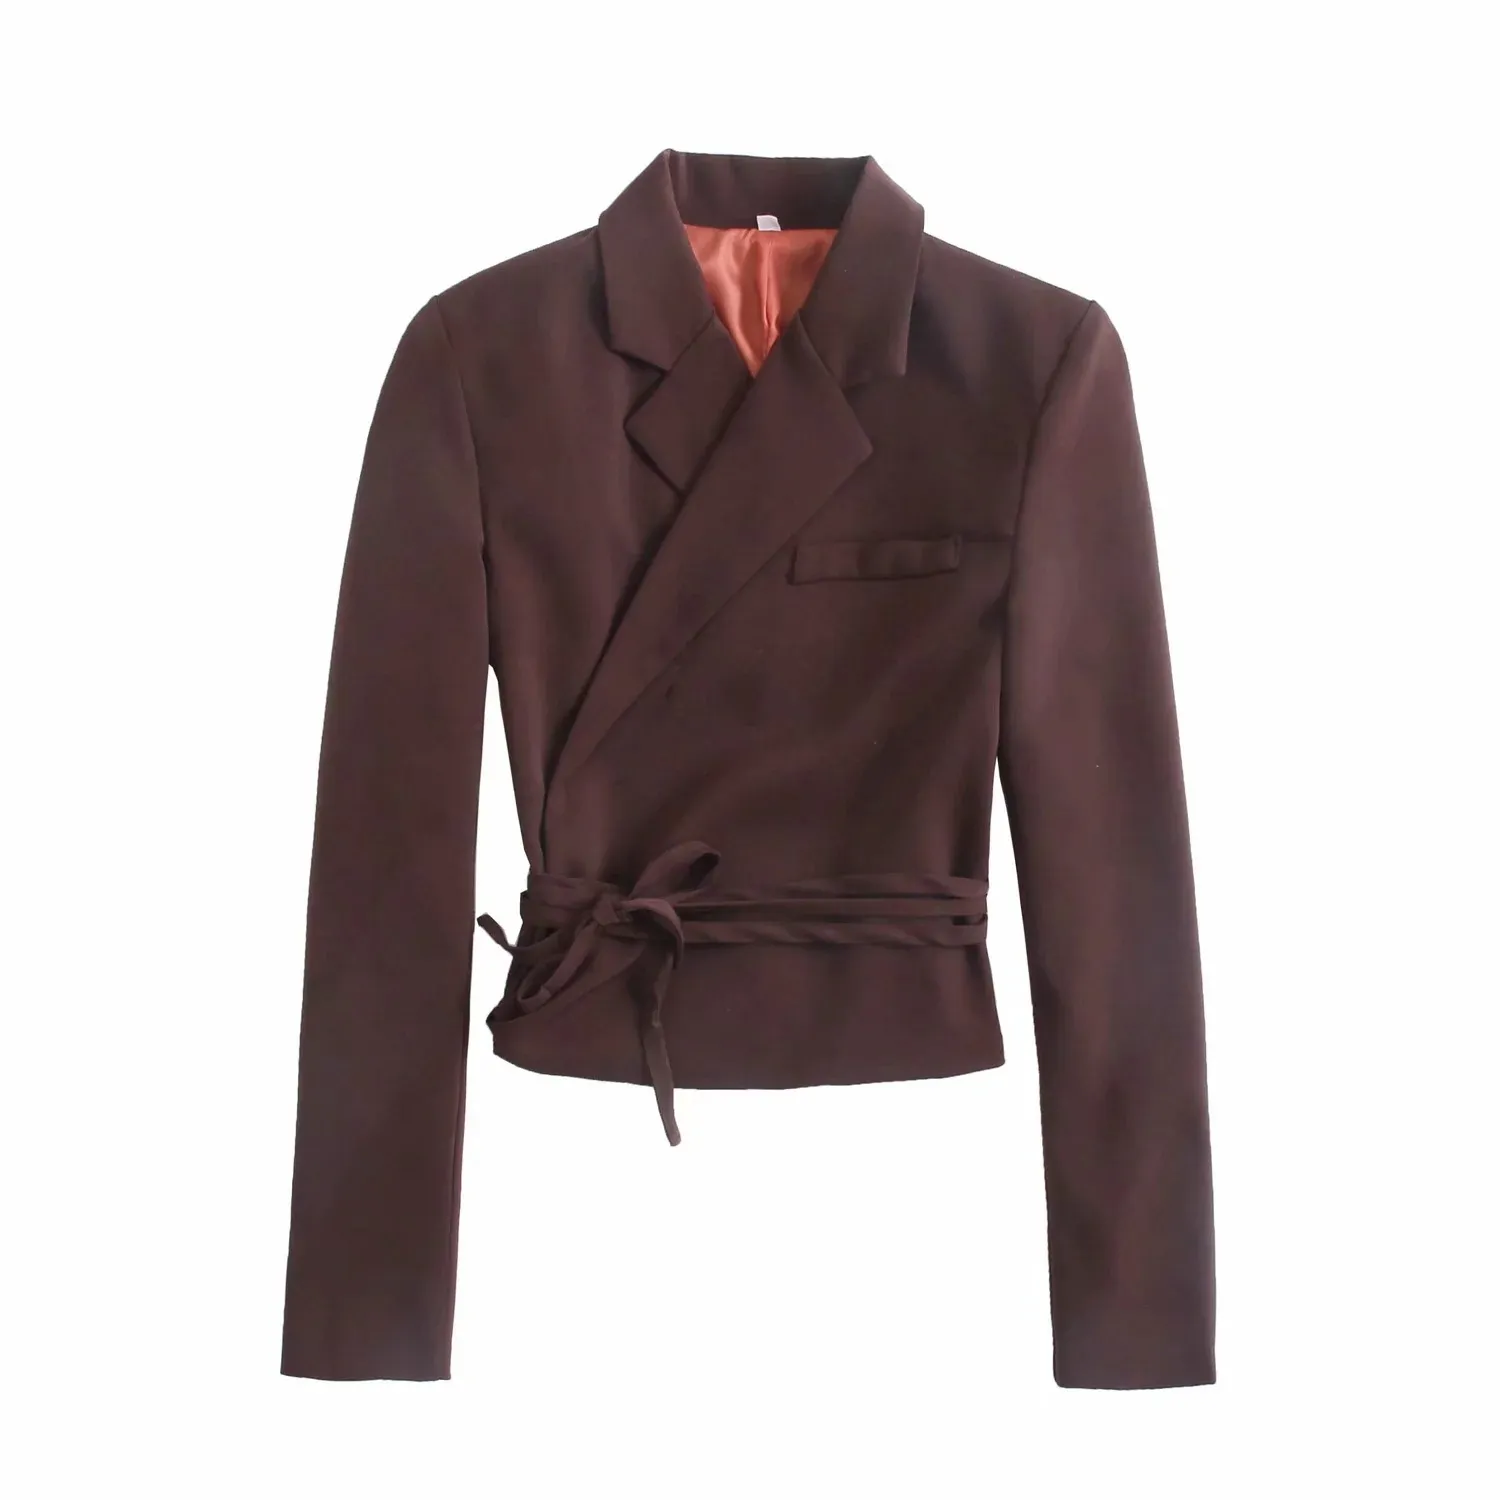 Koyu Kahverengi Kadın Blazer Ceket Tasarım Tüm Maç Yaka Casual Papyon Takım Elbise Ceket Ceket Ofis Lady Chic Bayan Tops 210521